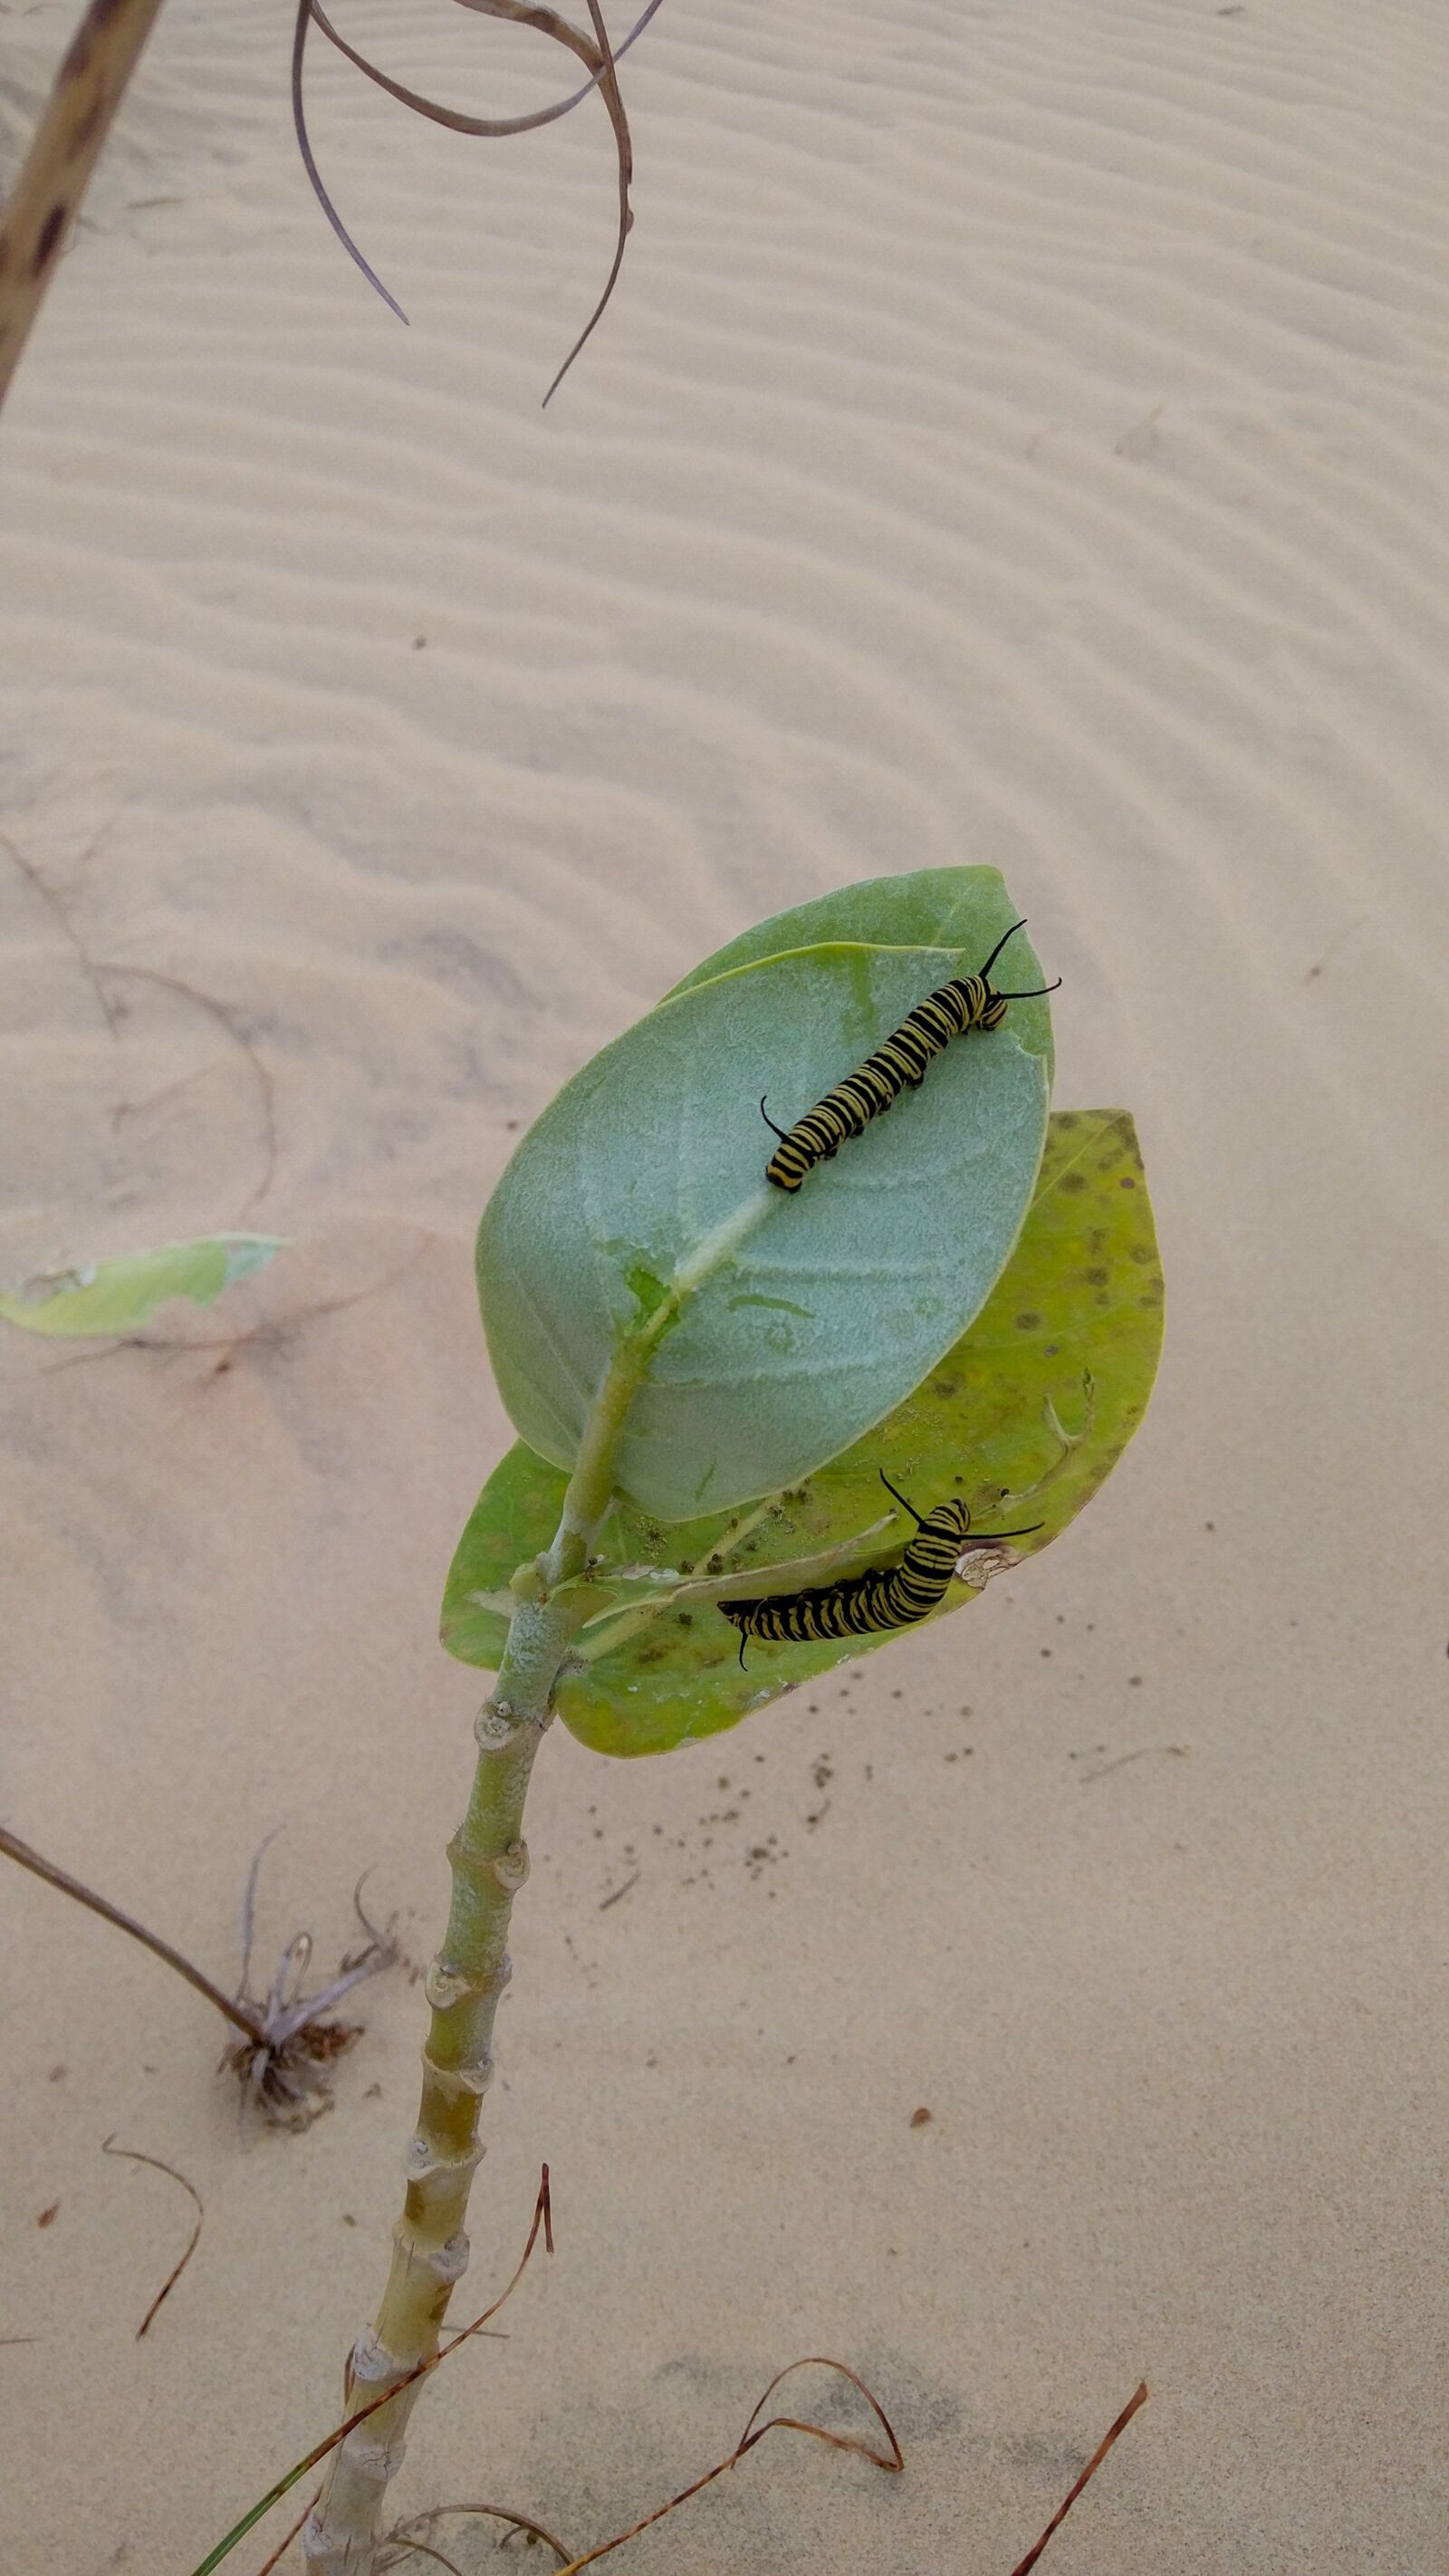 Xiaomi MIX sample photo. Caterpillar, plant, food photography